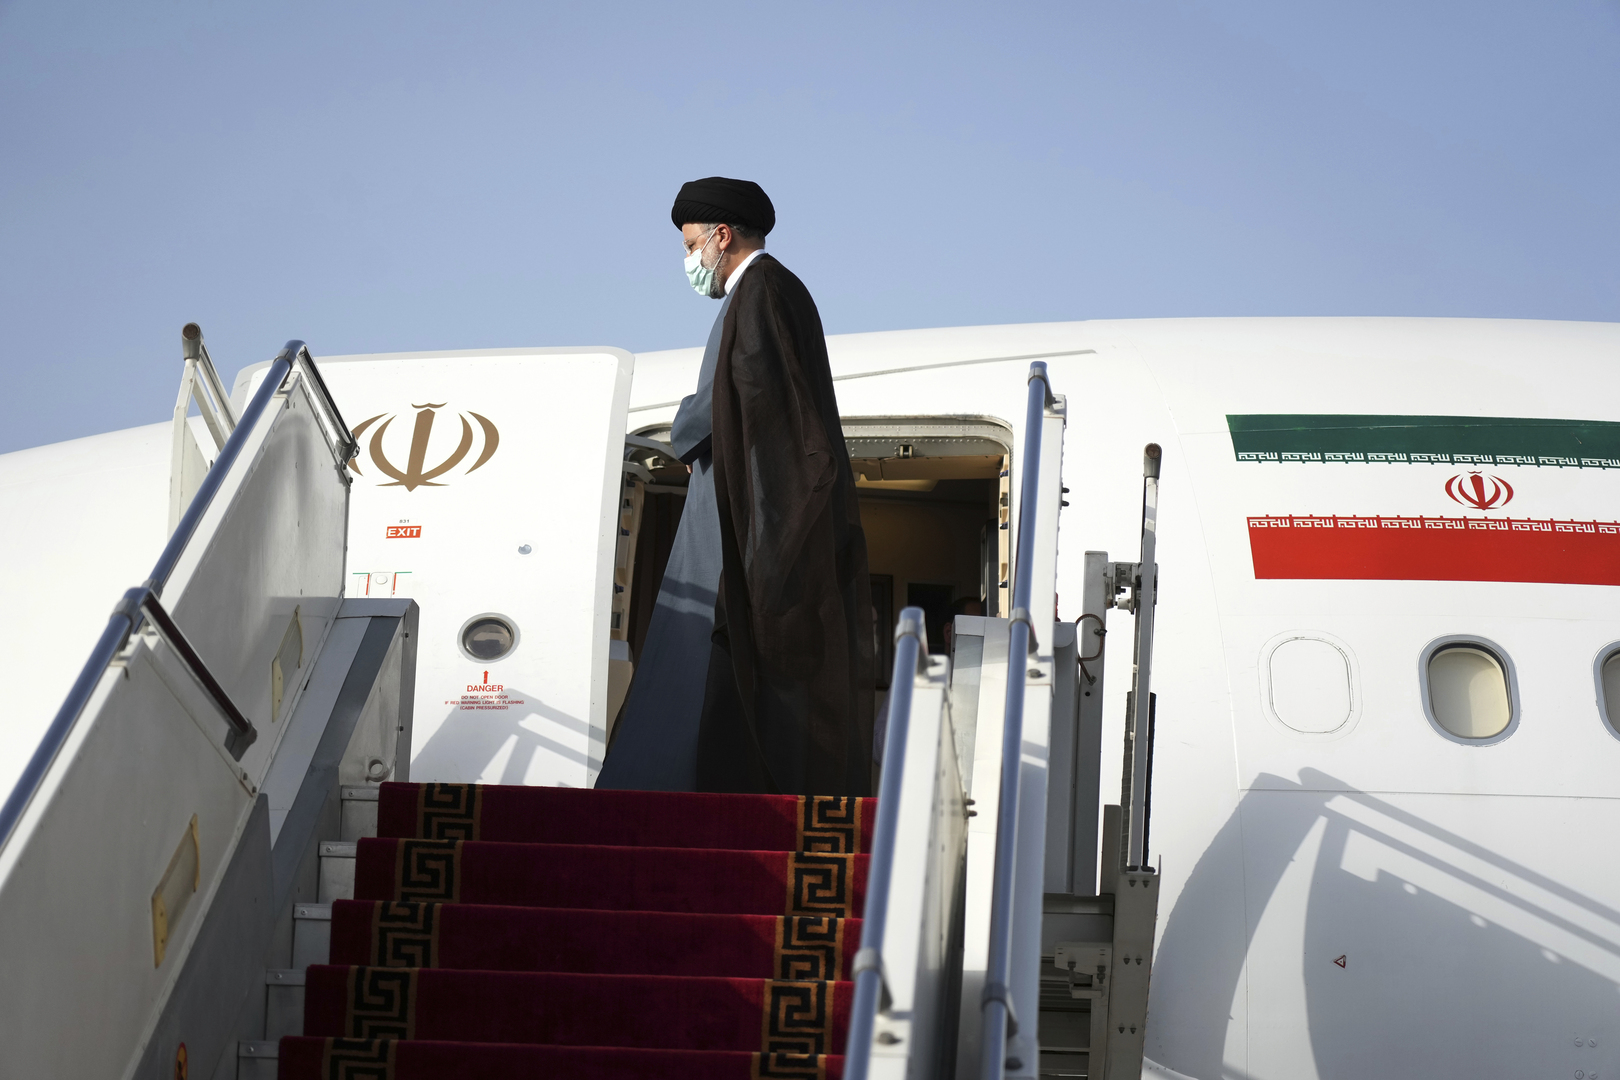 الرئيس الإيراني عن زيارته إلى سلطنة عمان: هذه الرحلة مهمة في إطار تطوير سياسة حسن الجوار